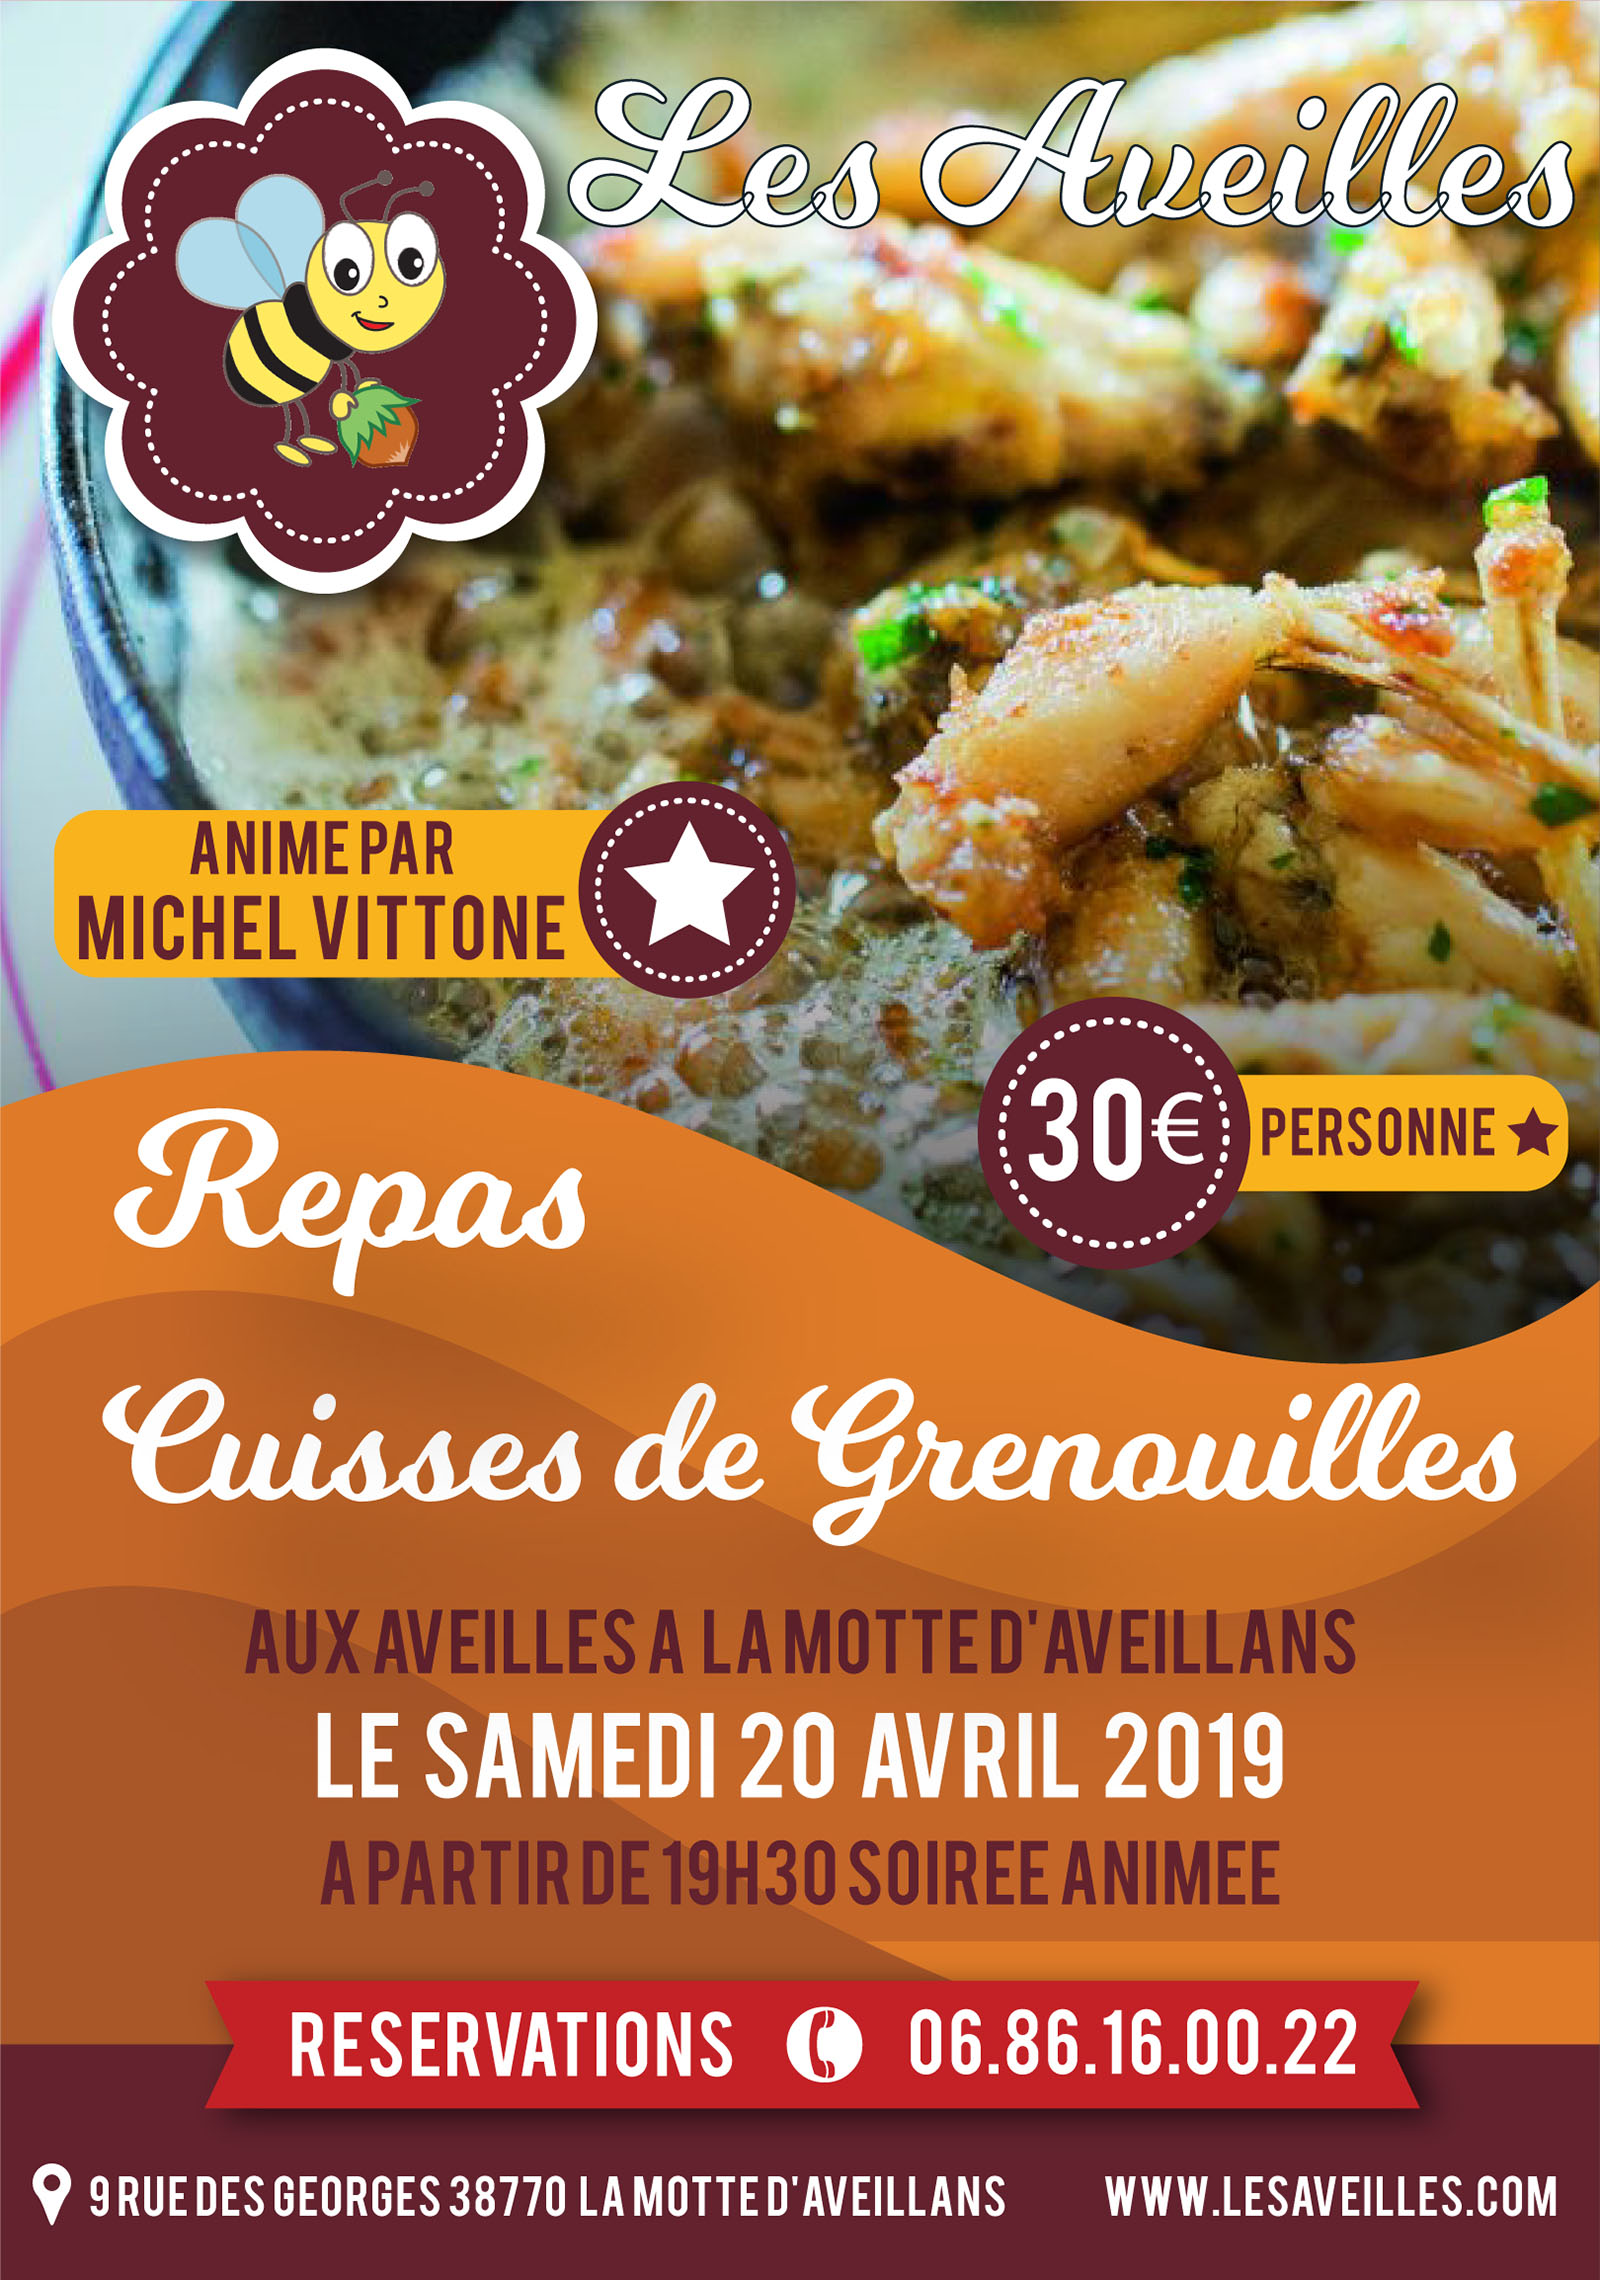 Cuisses de grenouilles le samedi 20 avril 2019 aux Aveilles